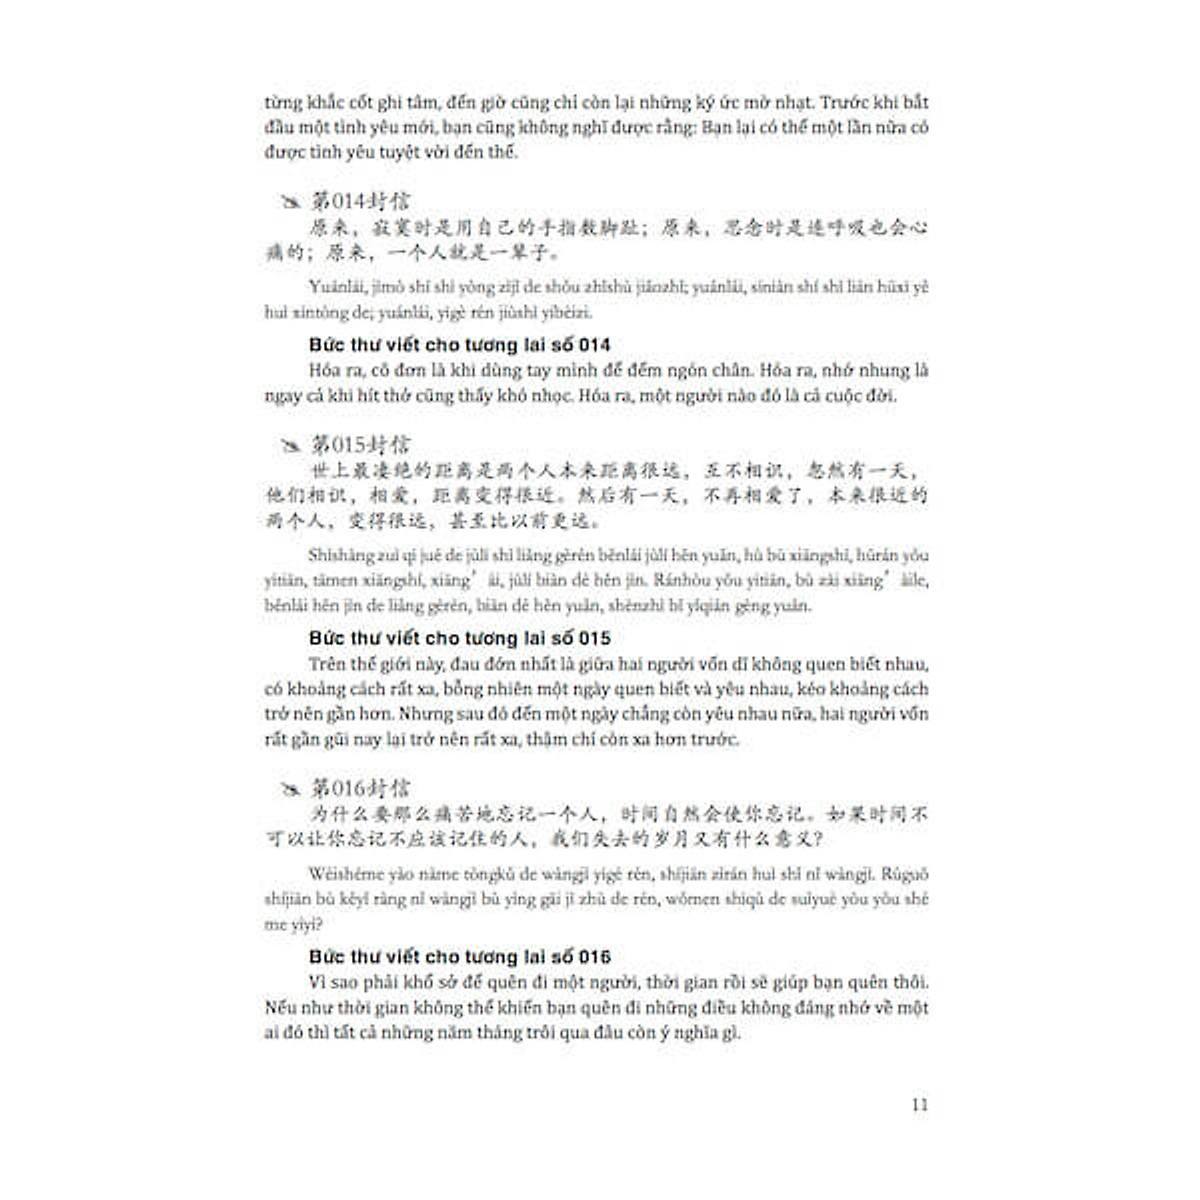 Combo 2 sách: 1001 Bức thư viết cho tương lai + Giáo Trình Hán Ngữ BOYA Quyển 01 – Sơ Cấp – Giáo trình tự học tiếng Trung BOYA cho người mới bắt đầu + DVD quà tặng